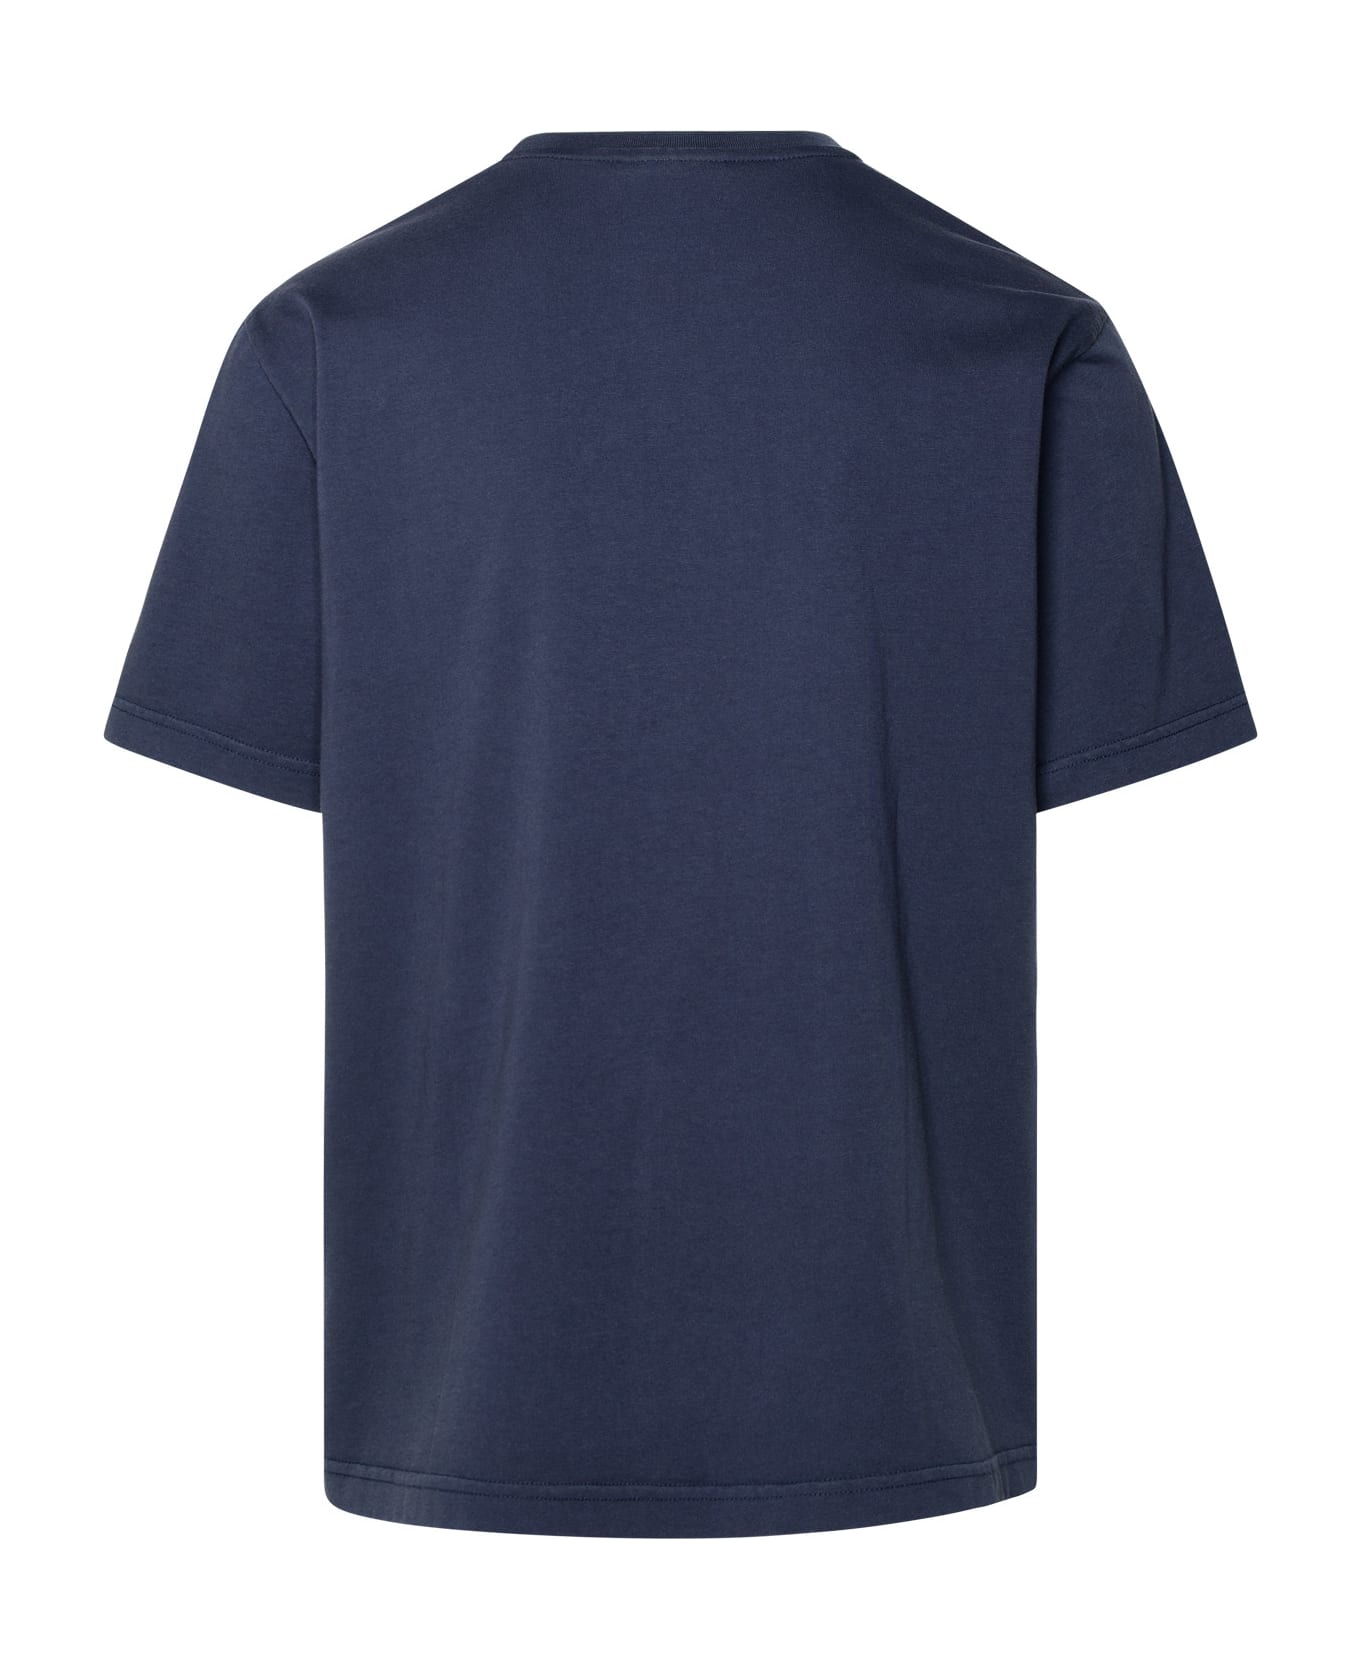 Maison Kitsuné Navy Cotton T-shirt - Navy